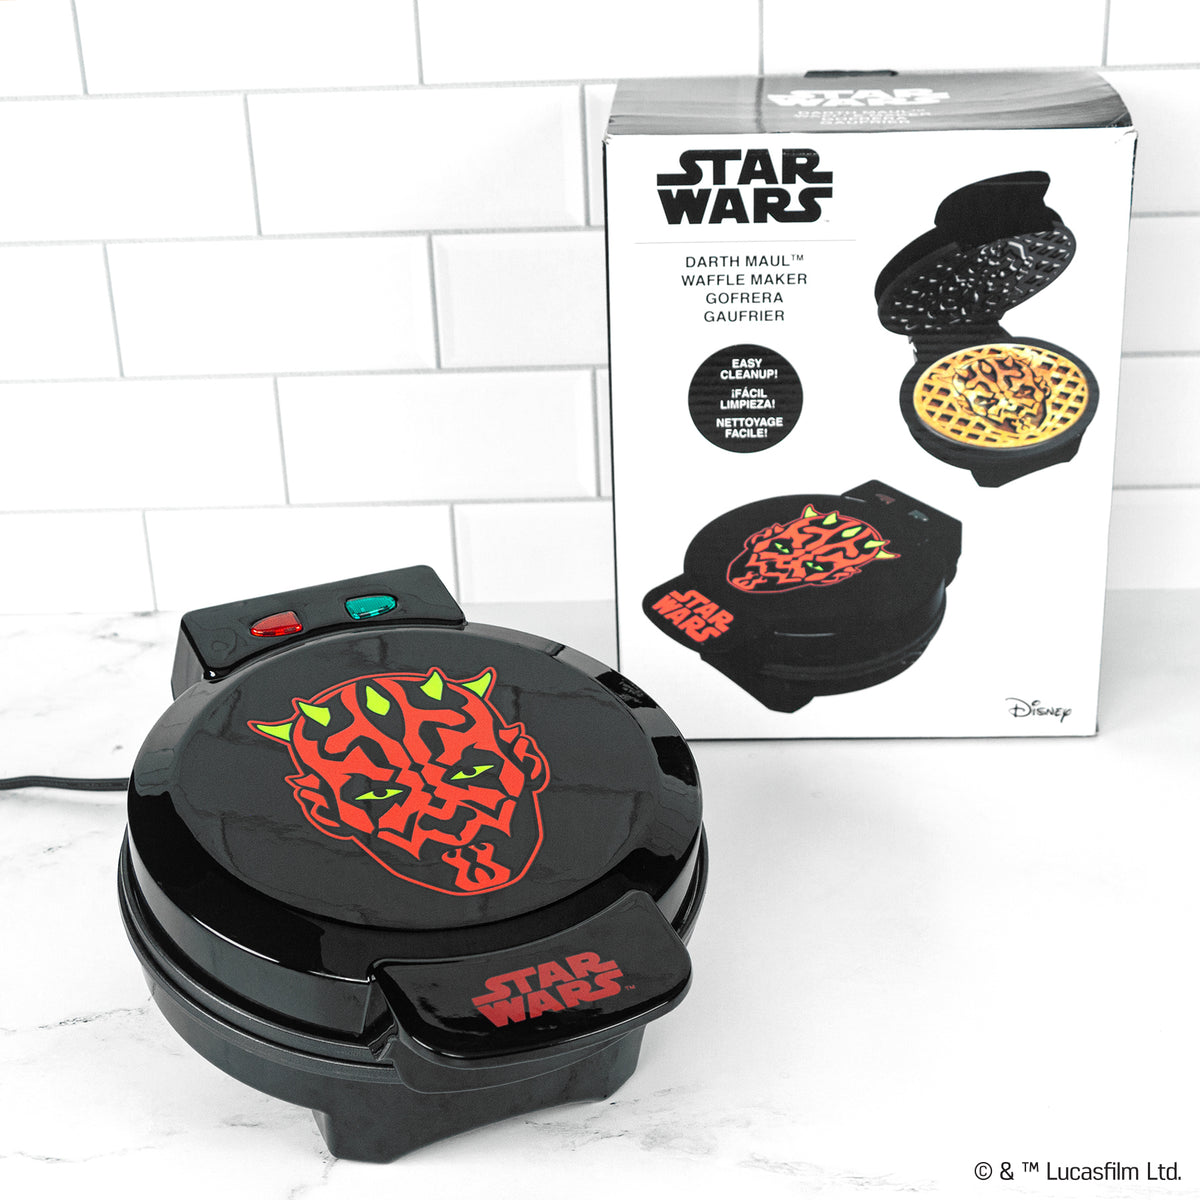 Star Wars Darth Maul Waffle Maker